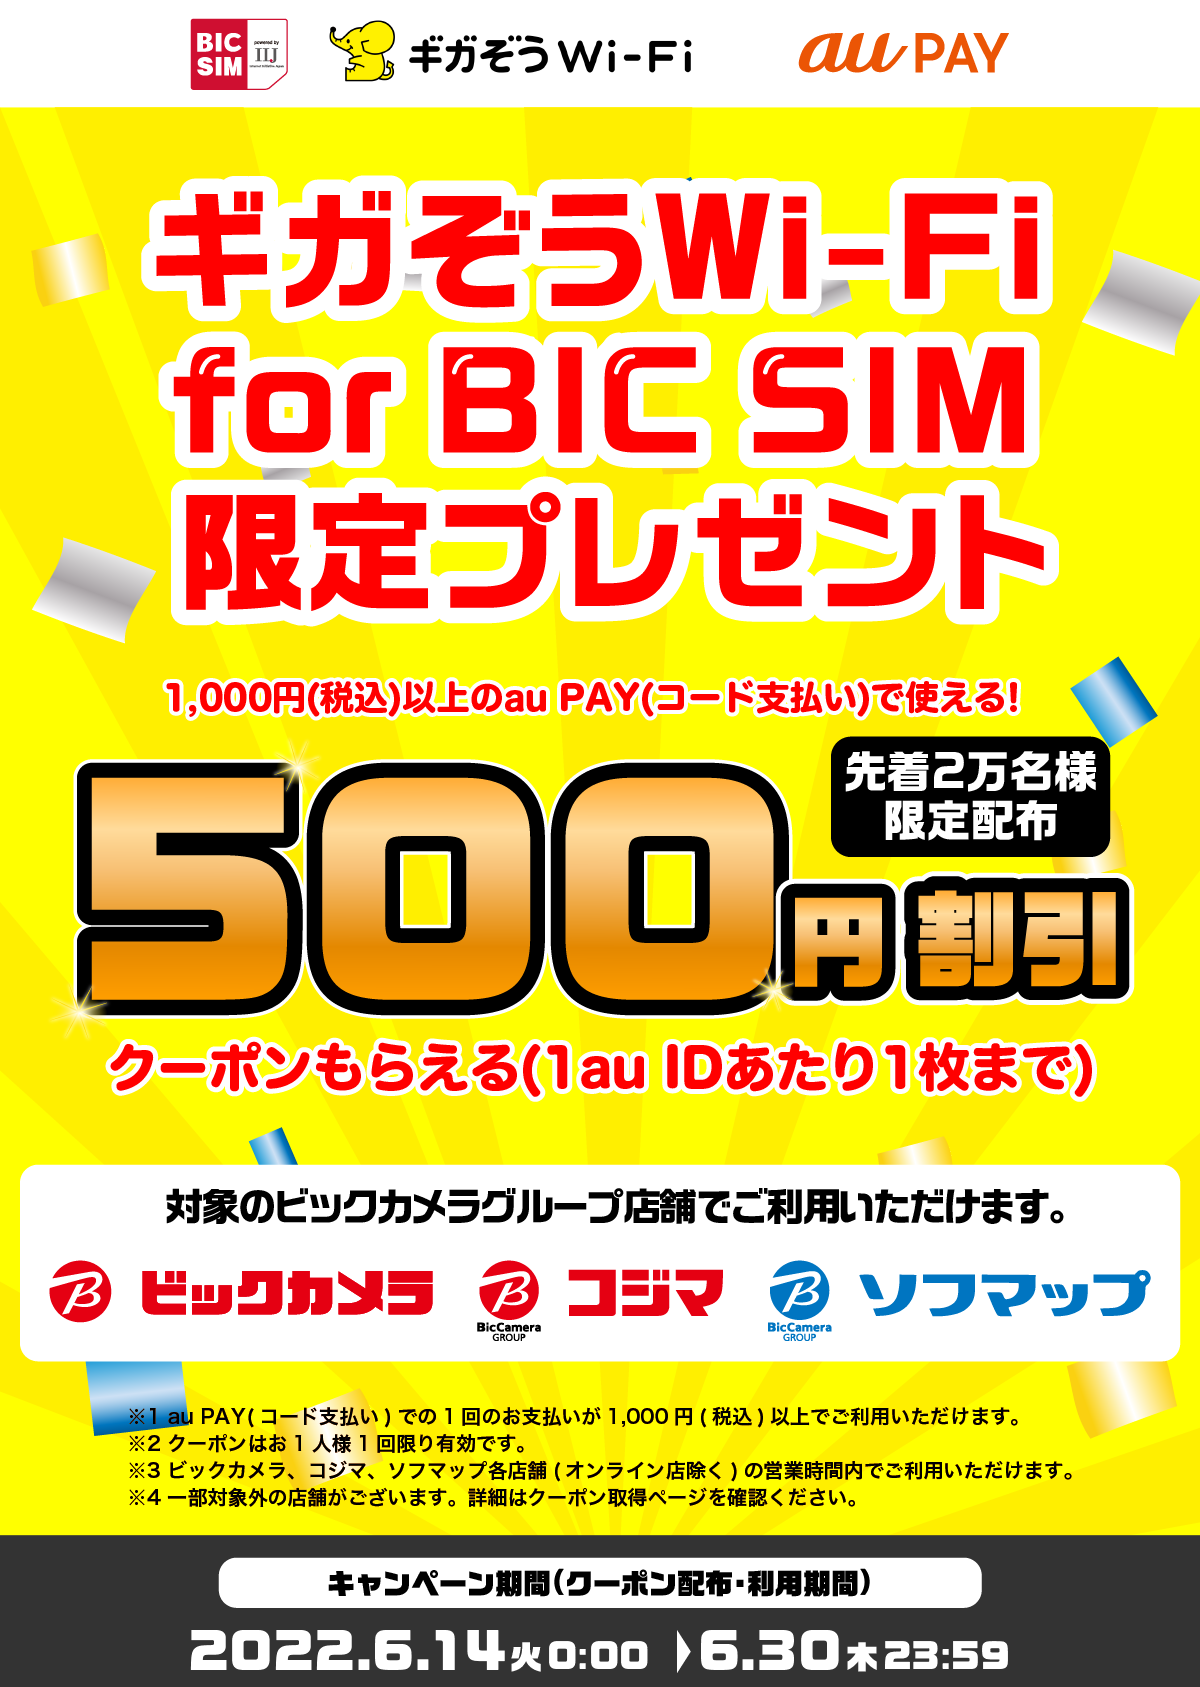 ギガぞう for BIC SIM利用者限定、ビックカメラのaupay500円引きクーポンが先着2万名にもらえる。6/14〜。